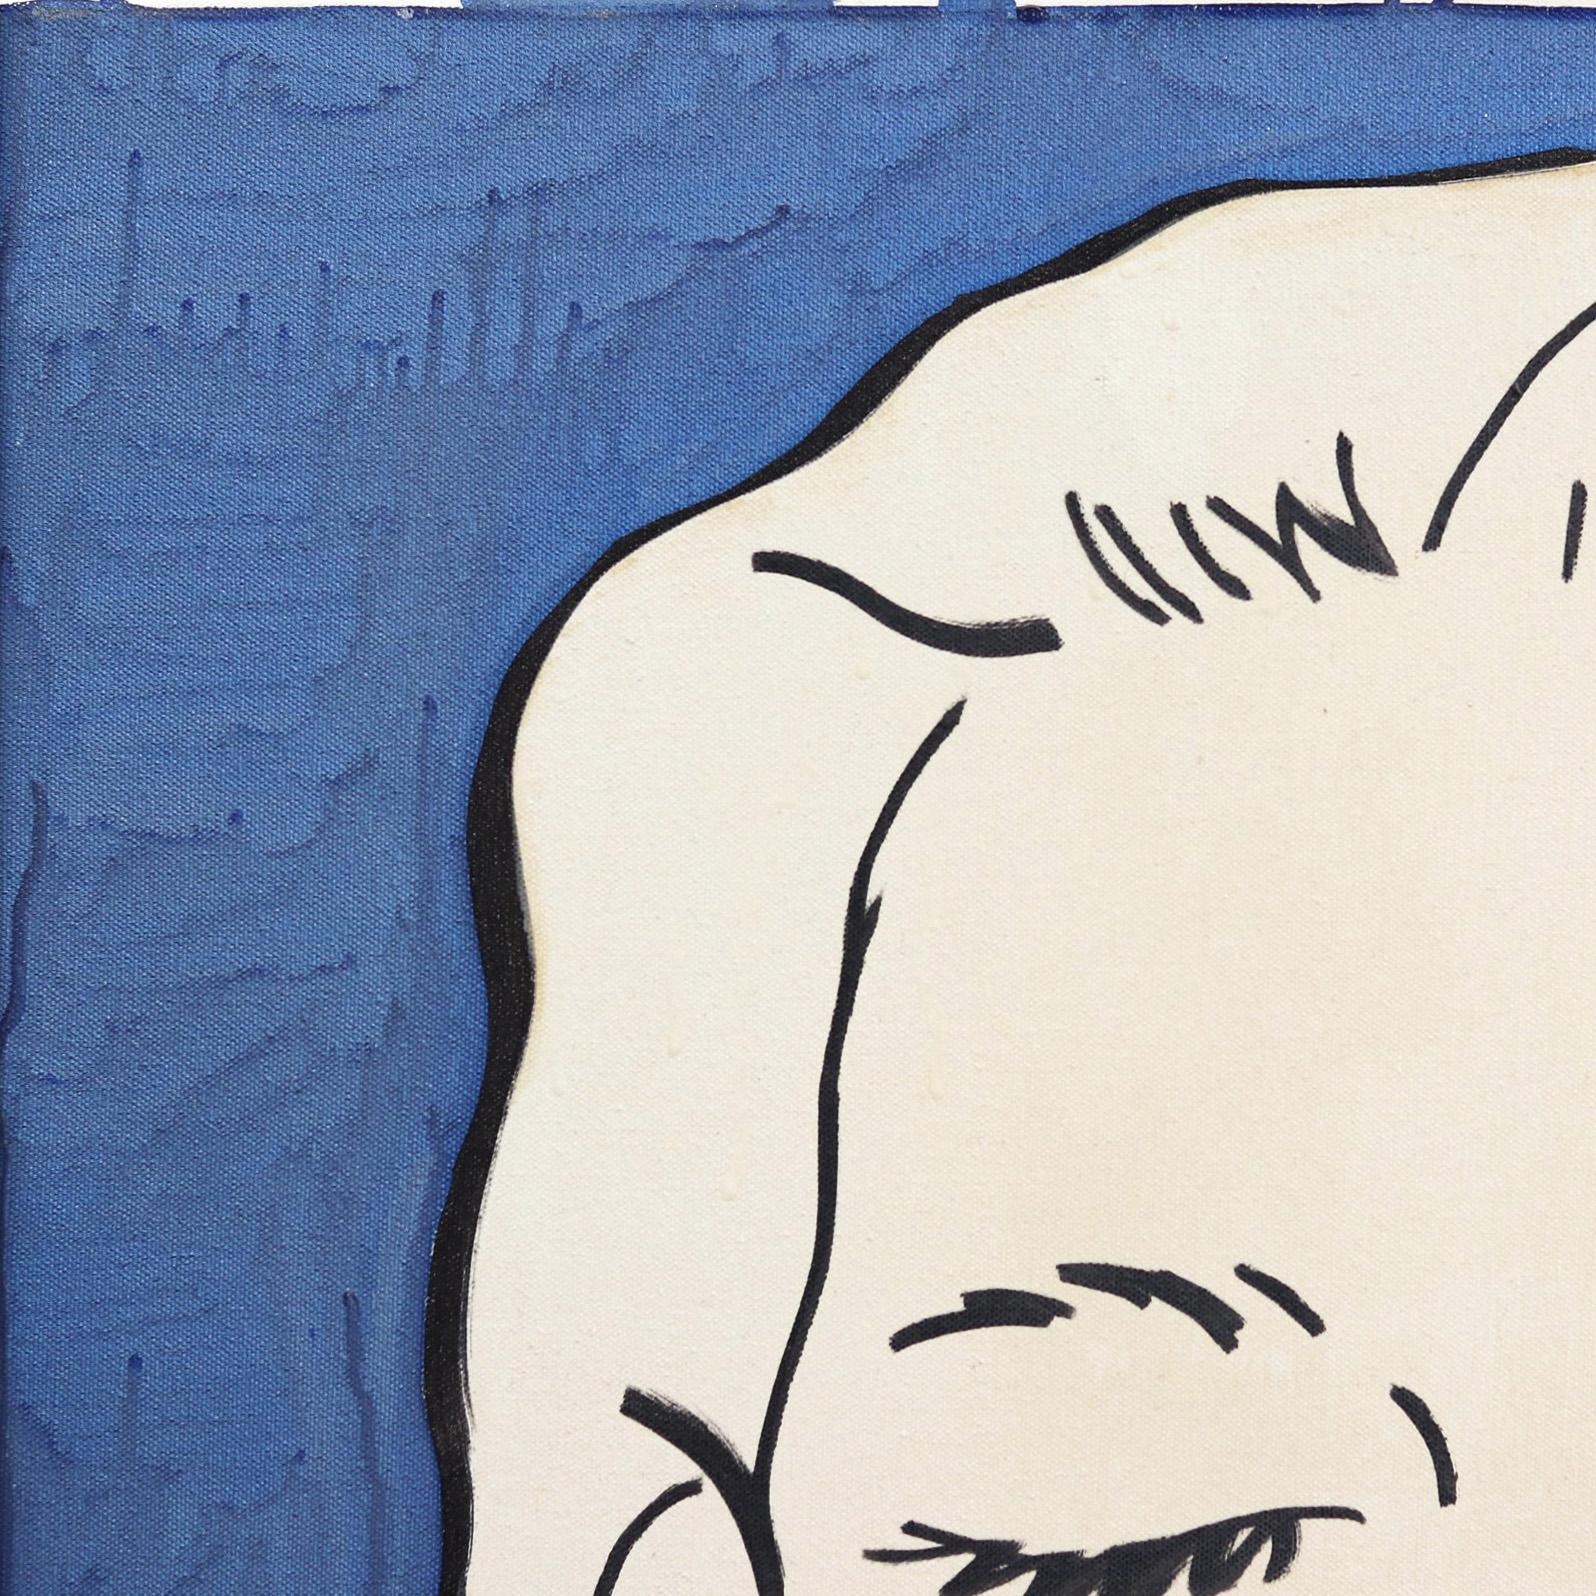 Dans des peintures acryliques audacieuses au trait, l'artiste américaine Hilary Bond représente des têtes et des torses de femmes, répétant souvent l'image dans des compositions qui se chevauchent. Ses groupes contemporains de portraits et de